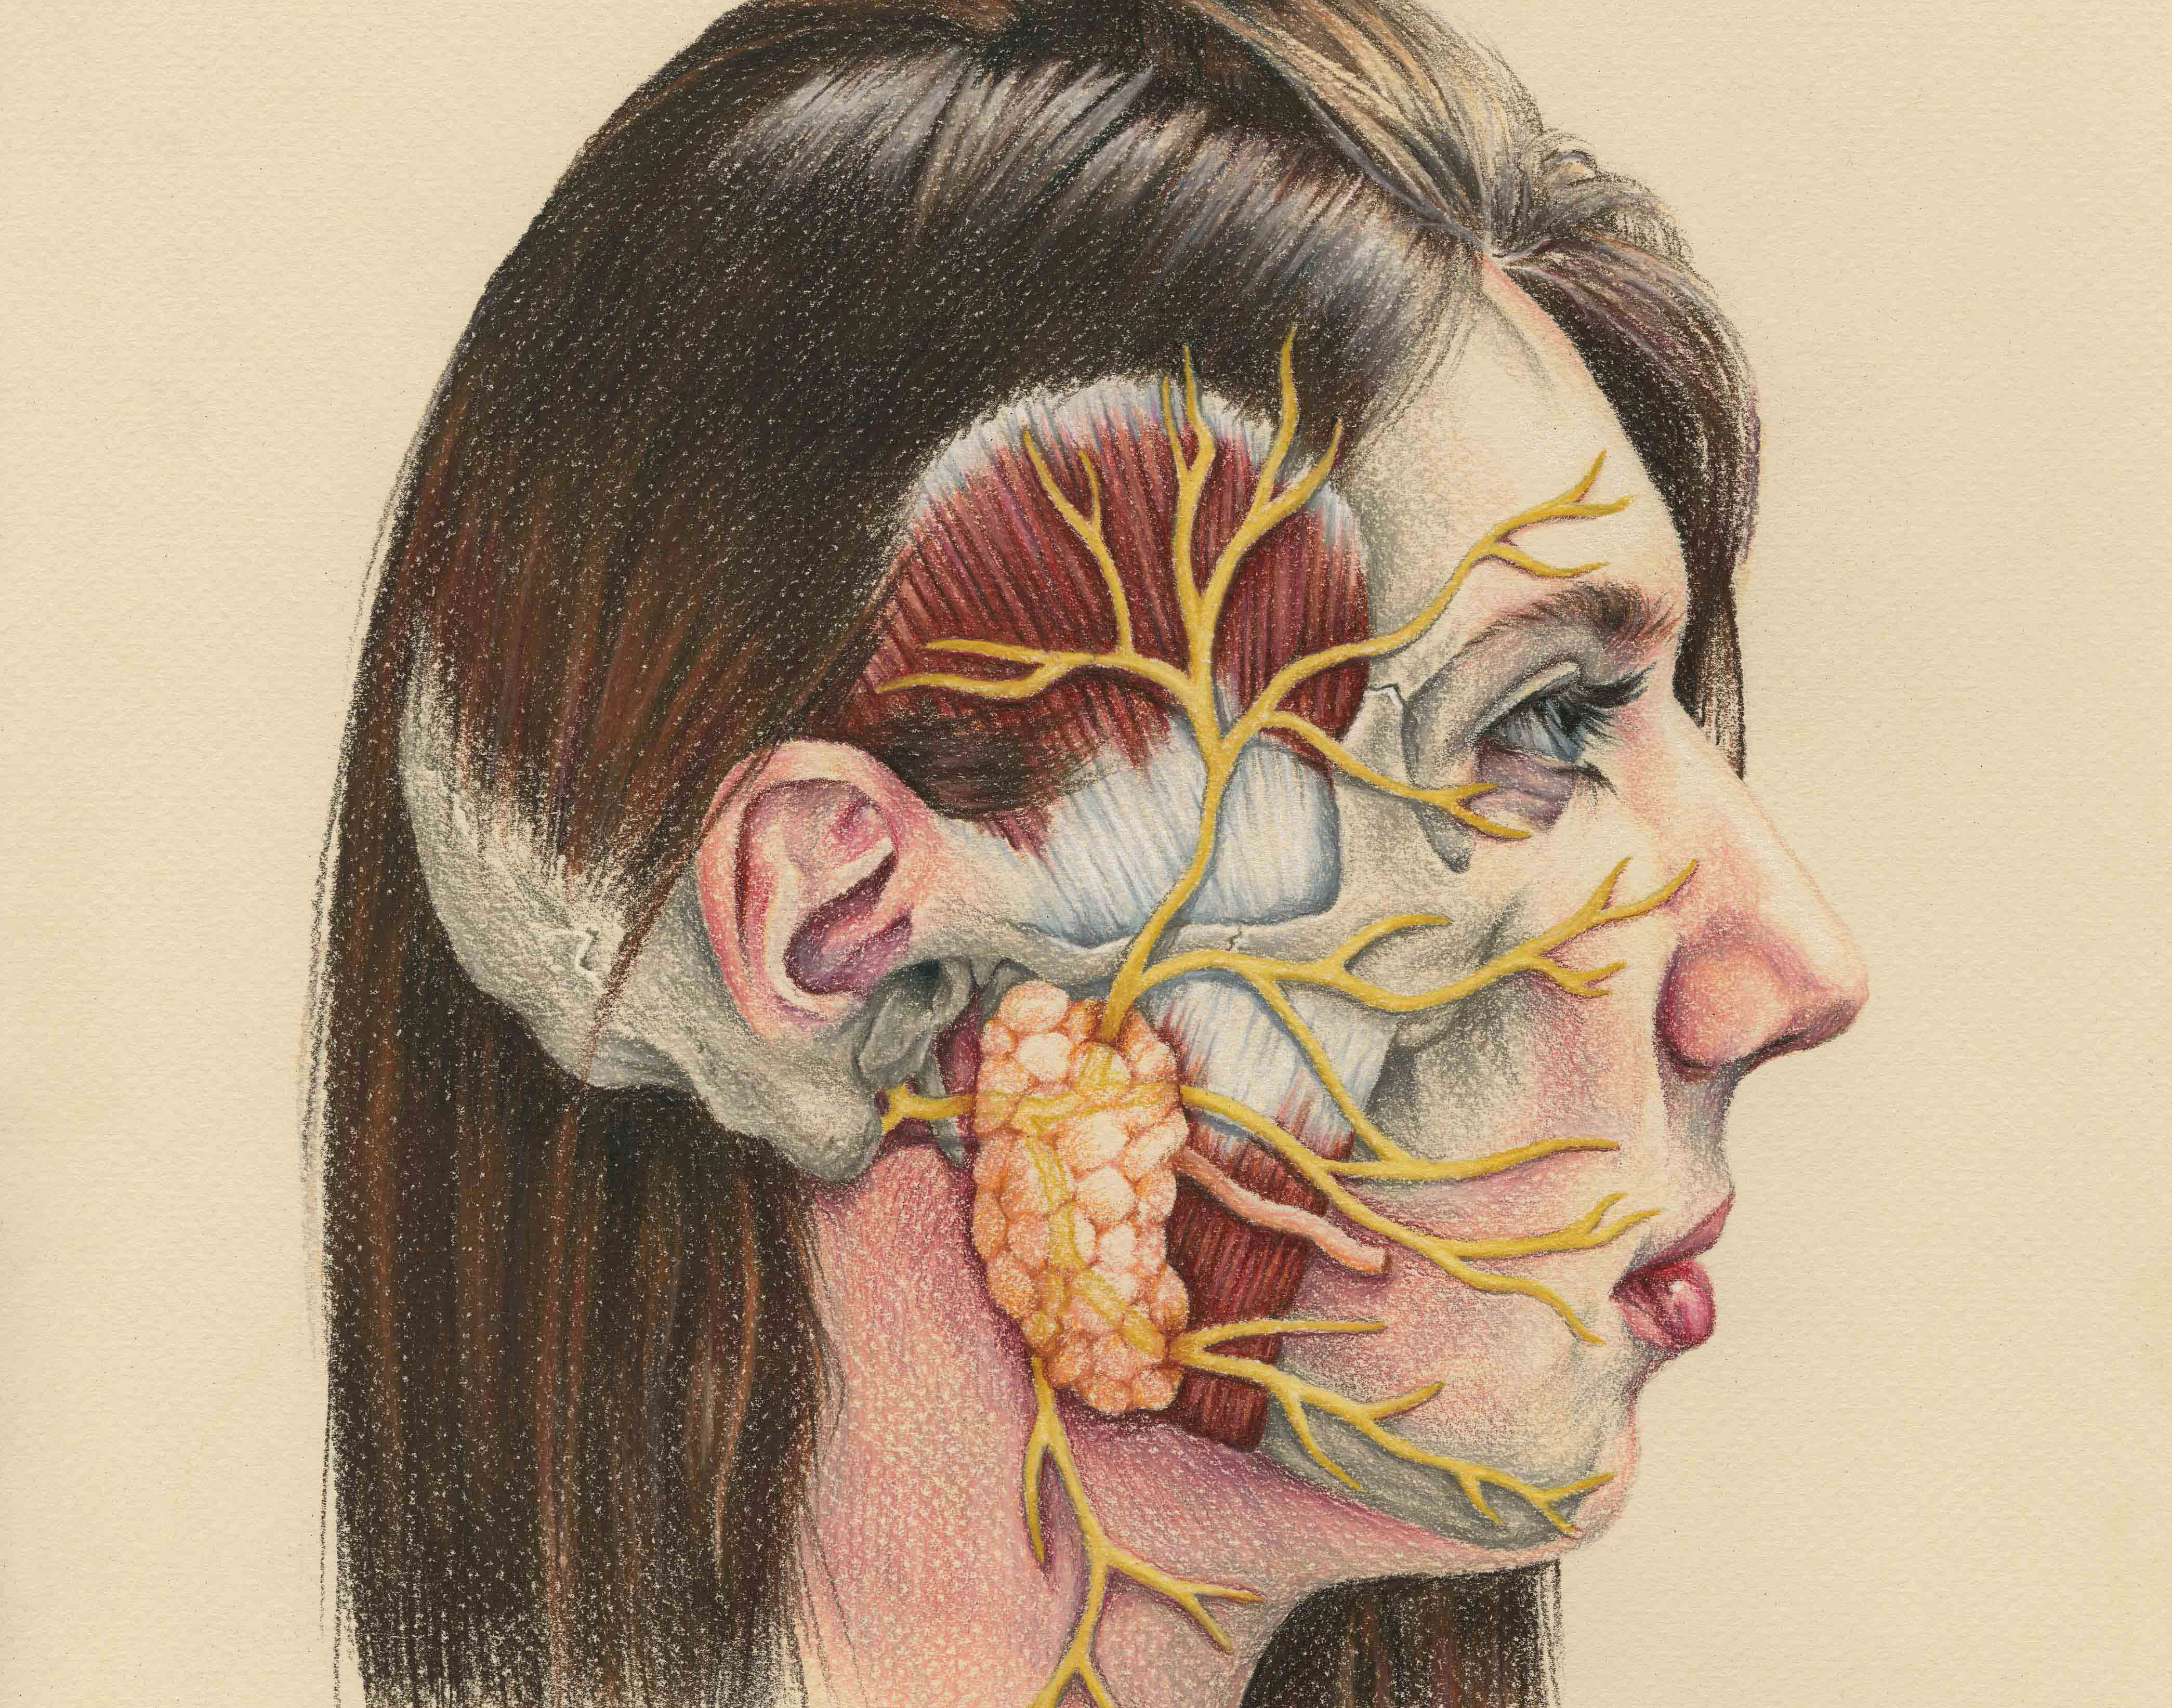 Челюстно лицевые нервы анатомия